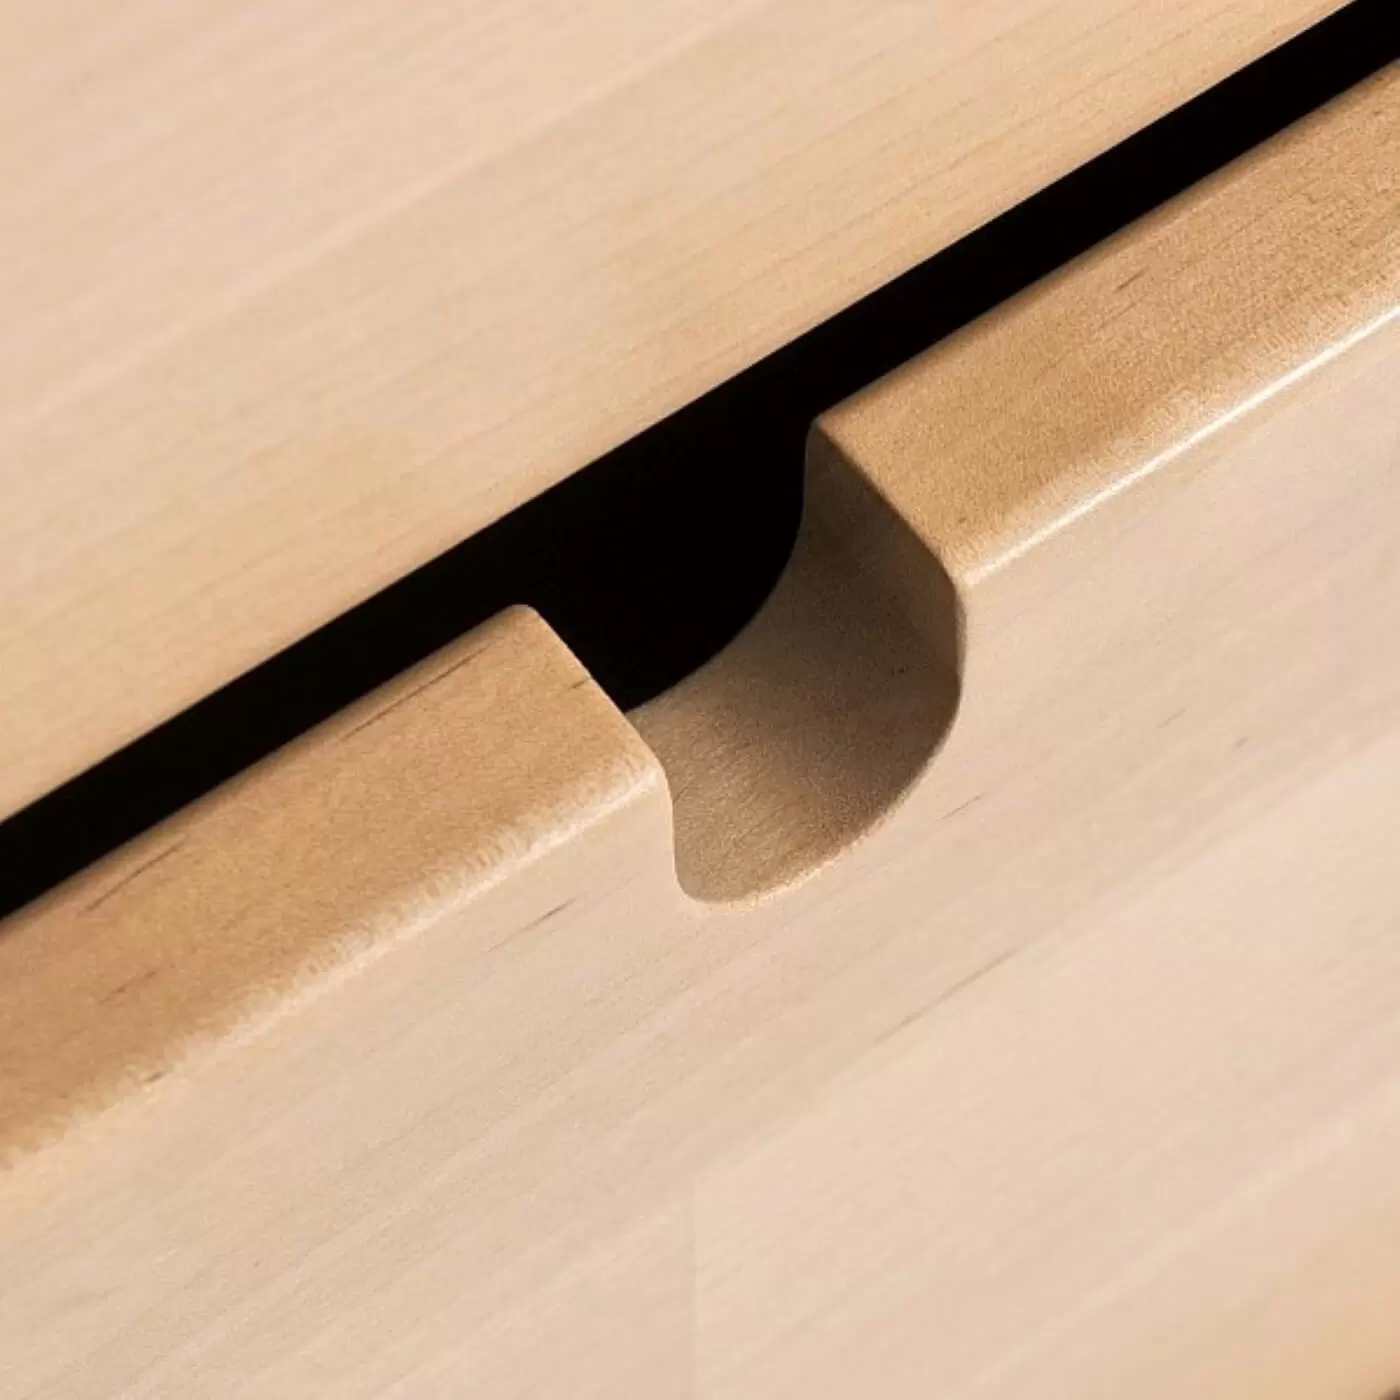 Komoda na nóżkach NOTTE. Ręcznie robiony niewystający uchwyt drewnianej szuflady. Minimalistyczny nowoczesny skandynawski design